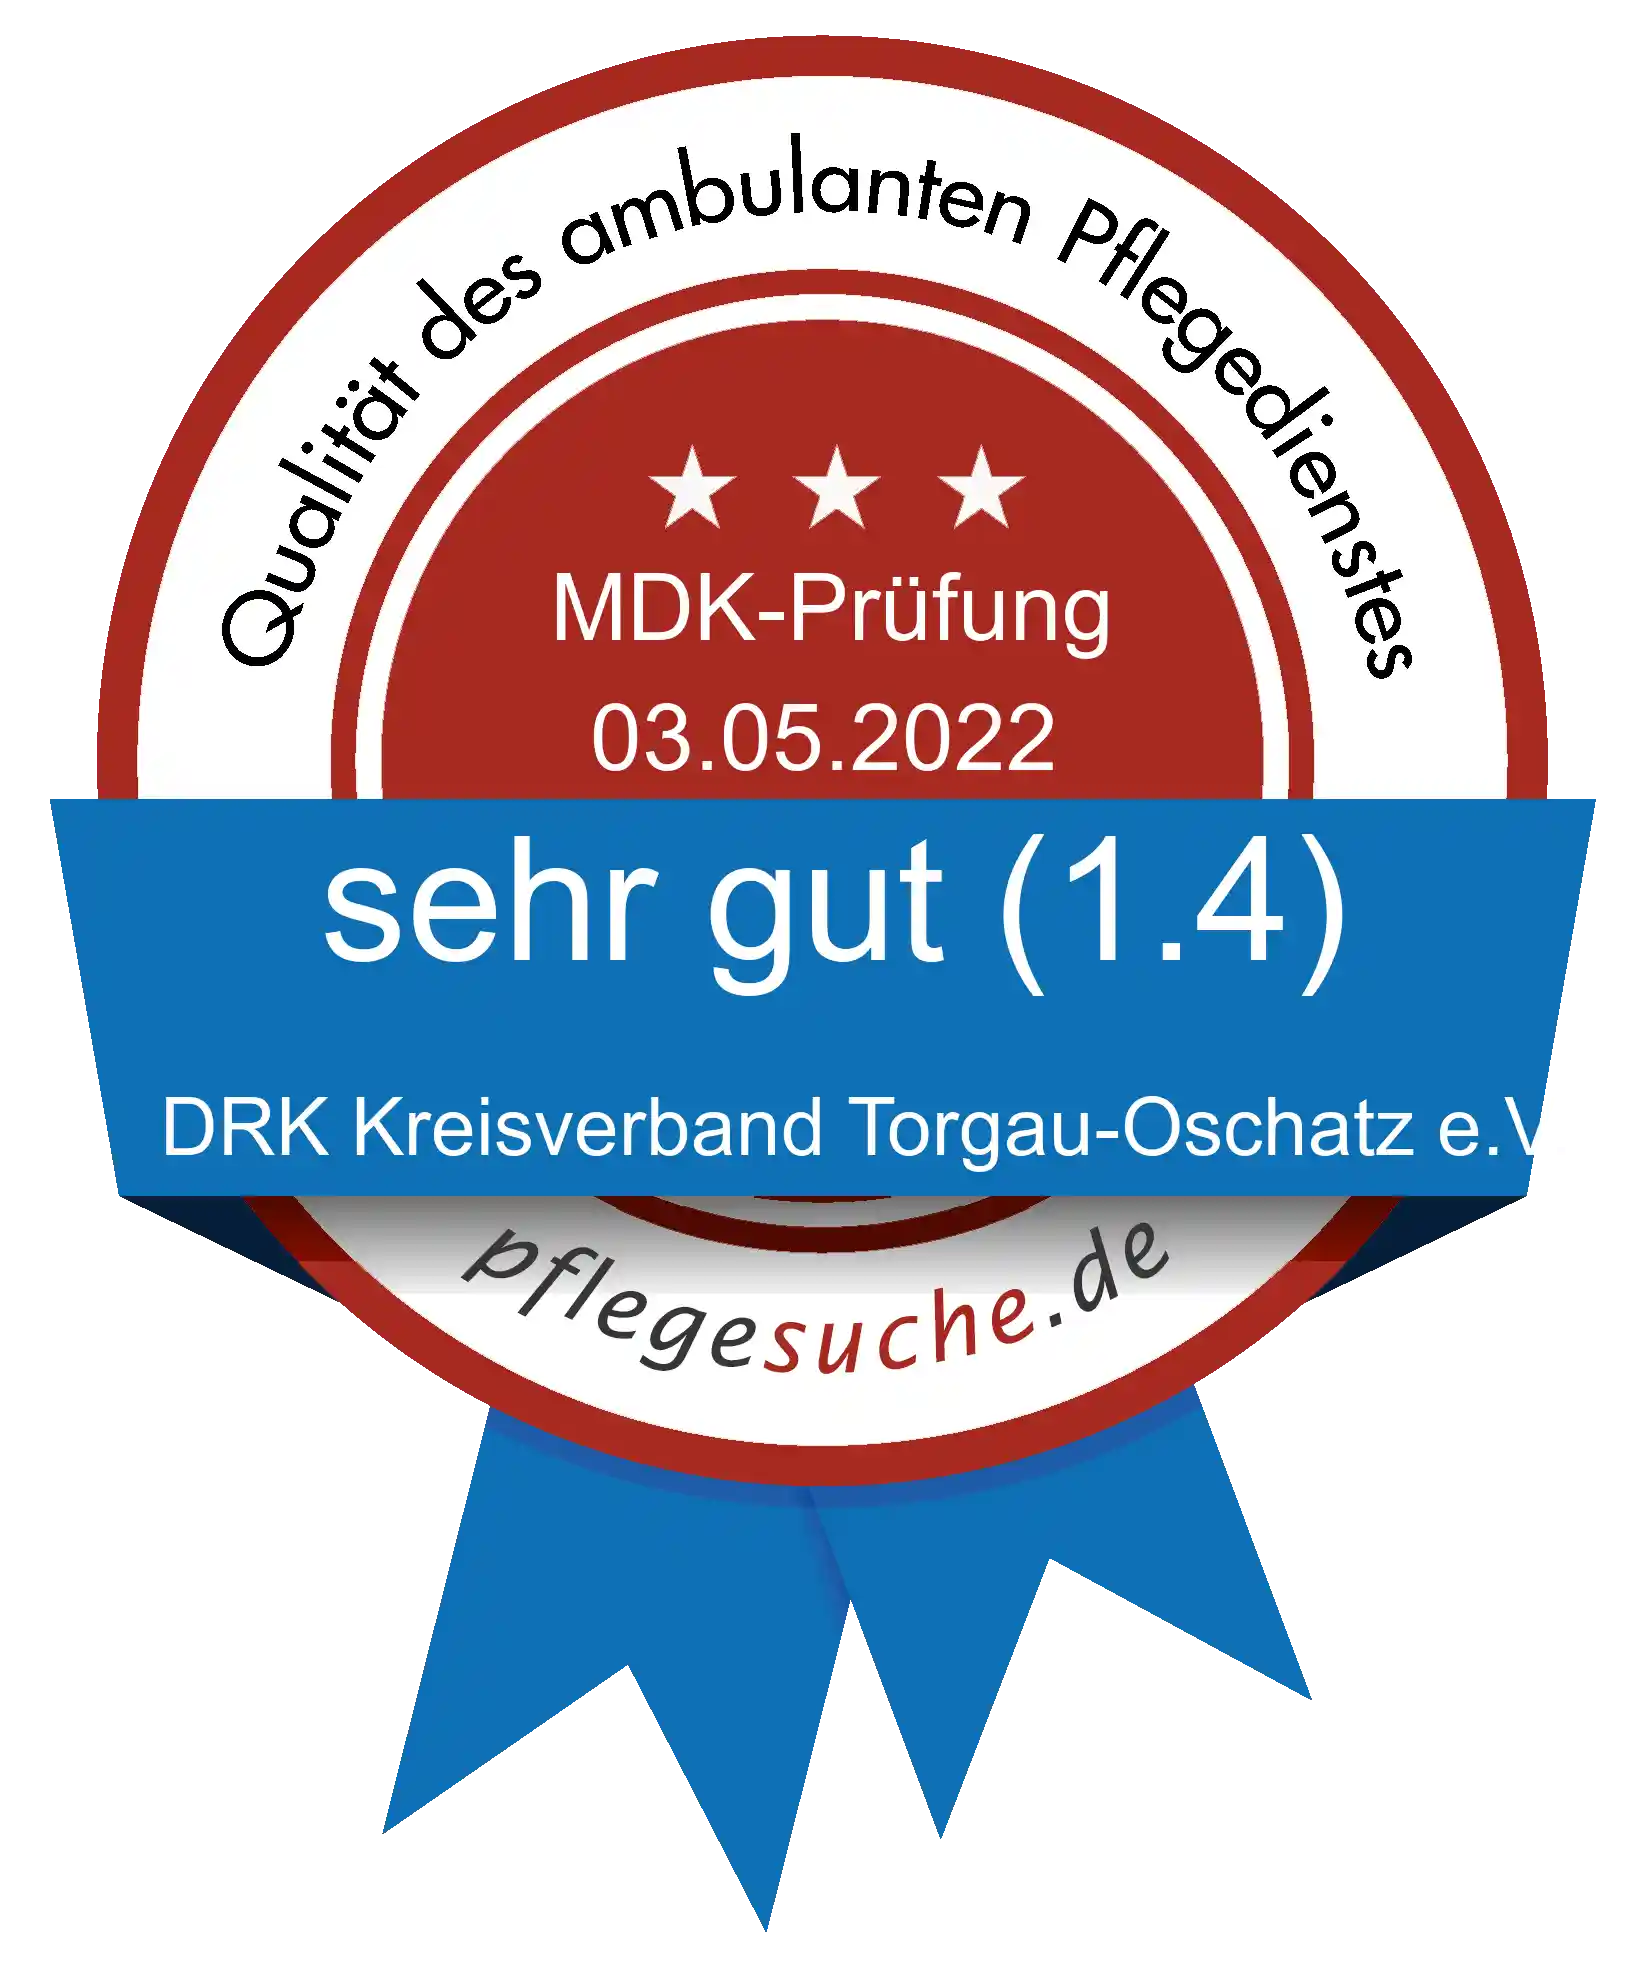 Siegel Benotung: DRK Kreisverband Torgau-Oschatz e.V.